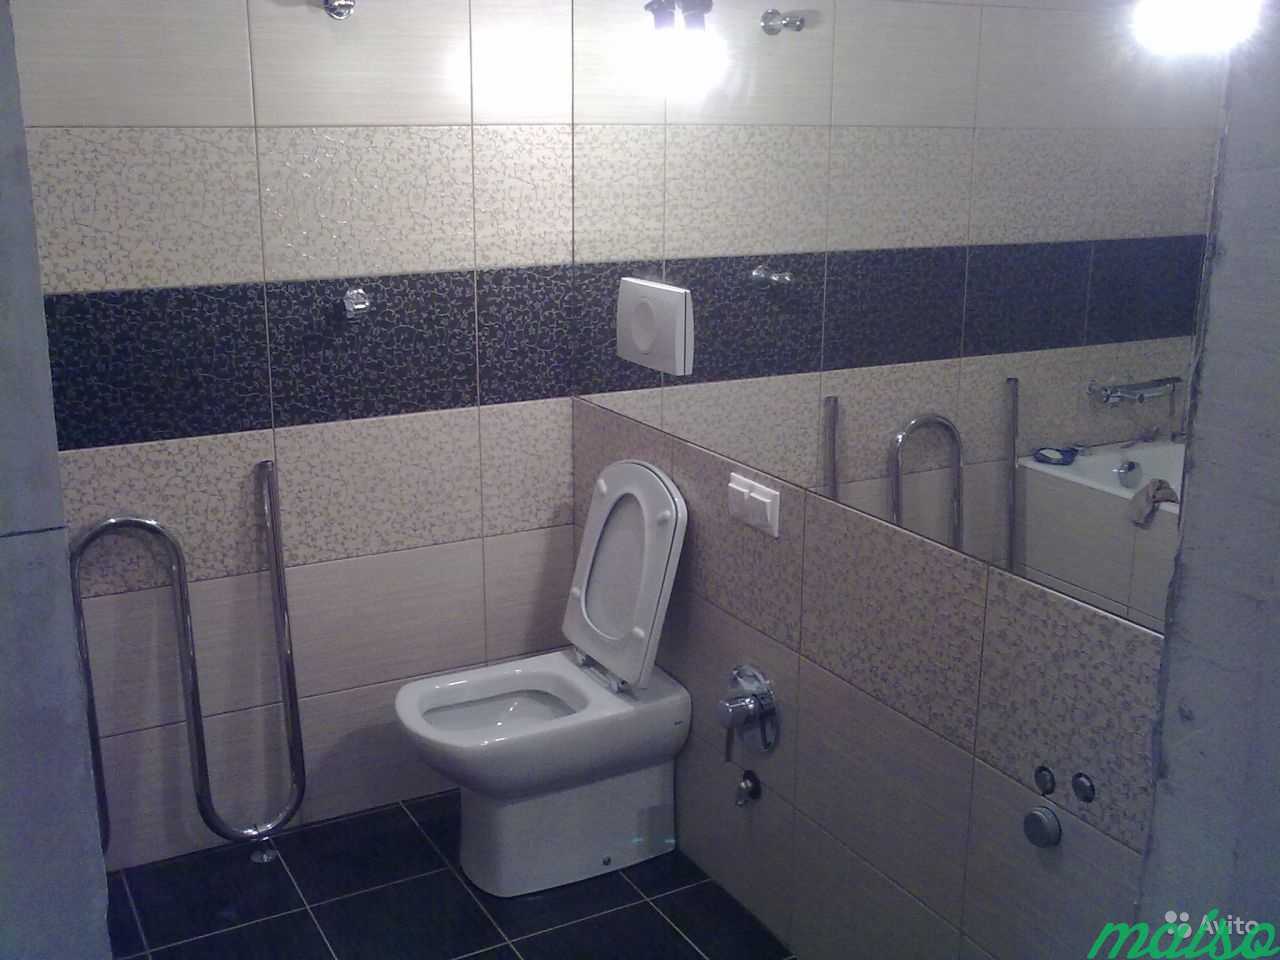 Ванные комнаты под ключ в Москве. Фото 2